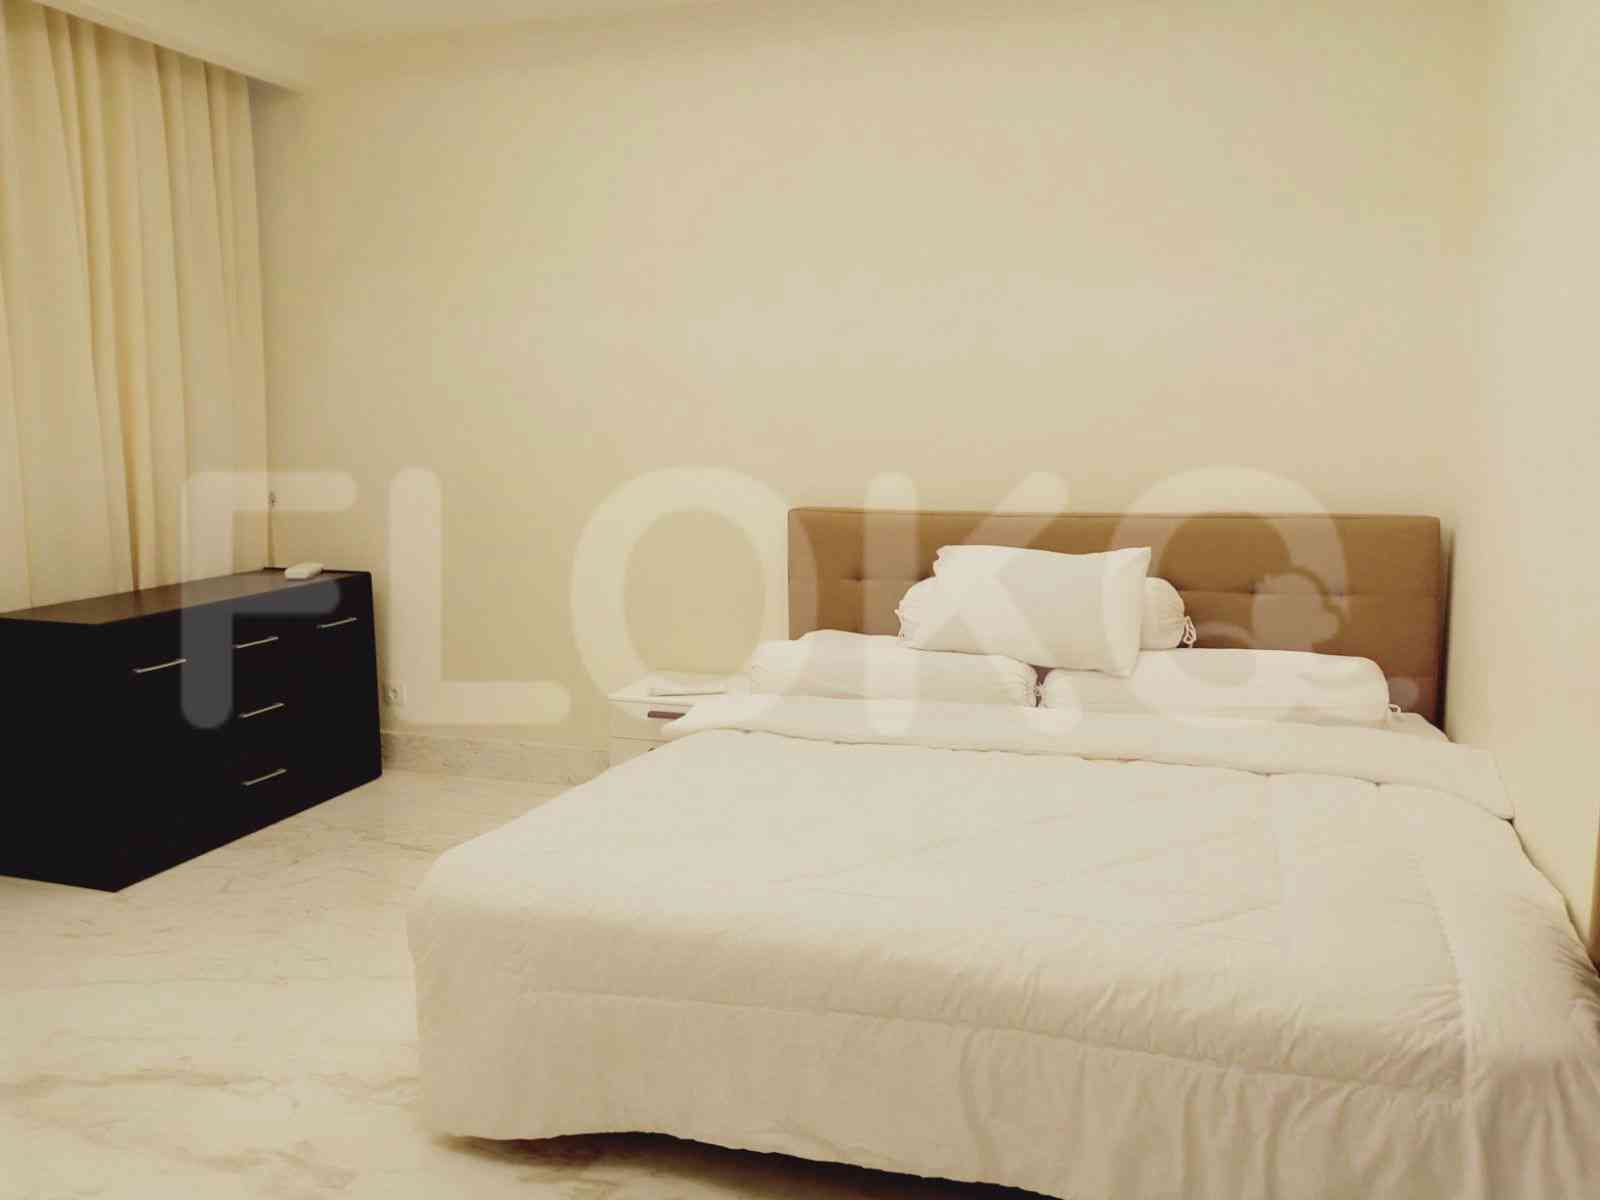 2 Bedroom on 2nd Floor for Rent in Botanica  - fsie99 3